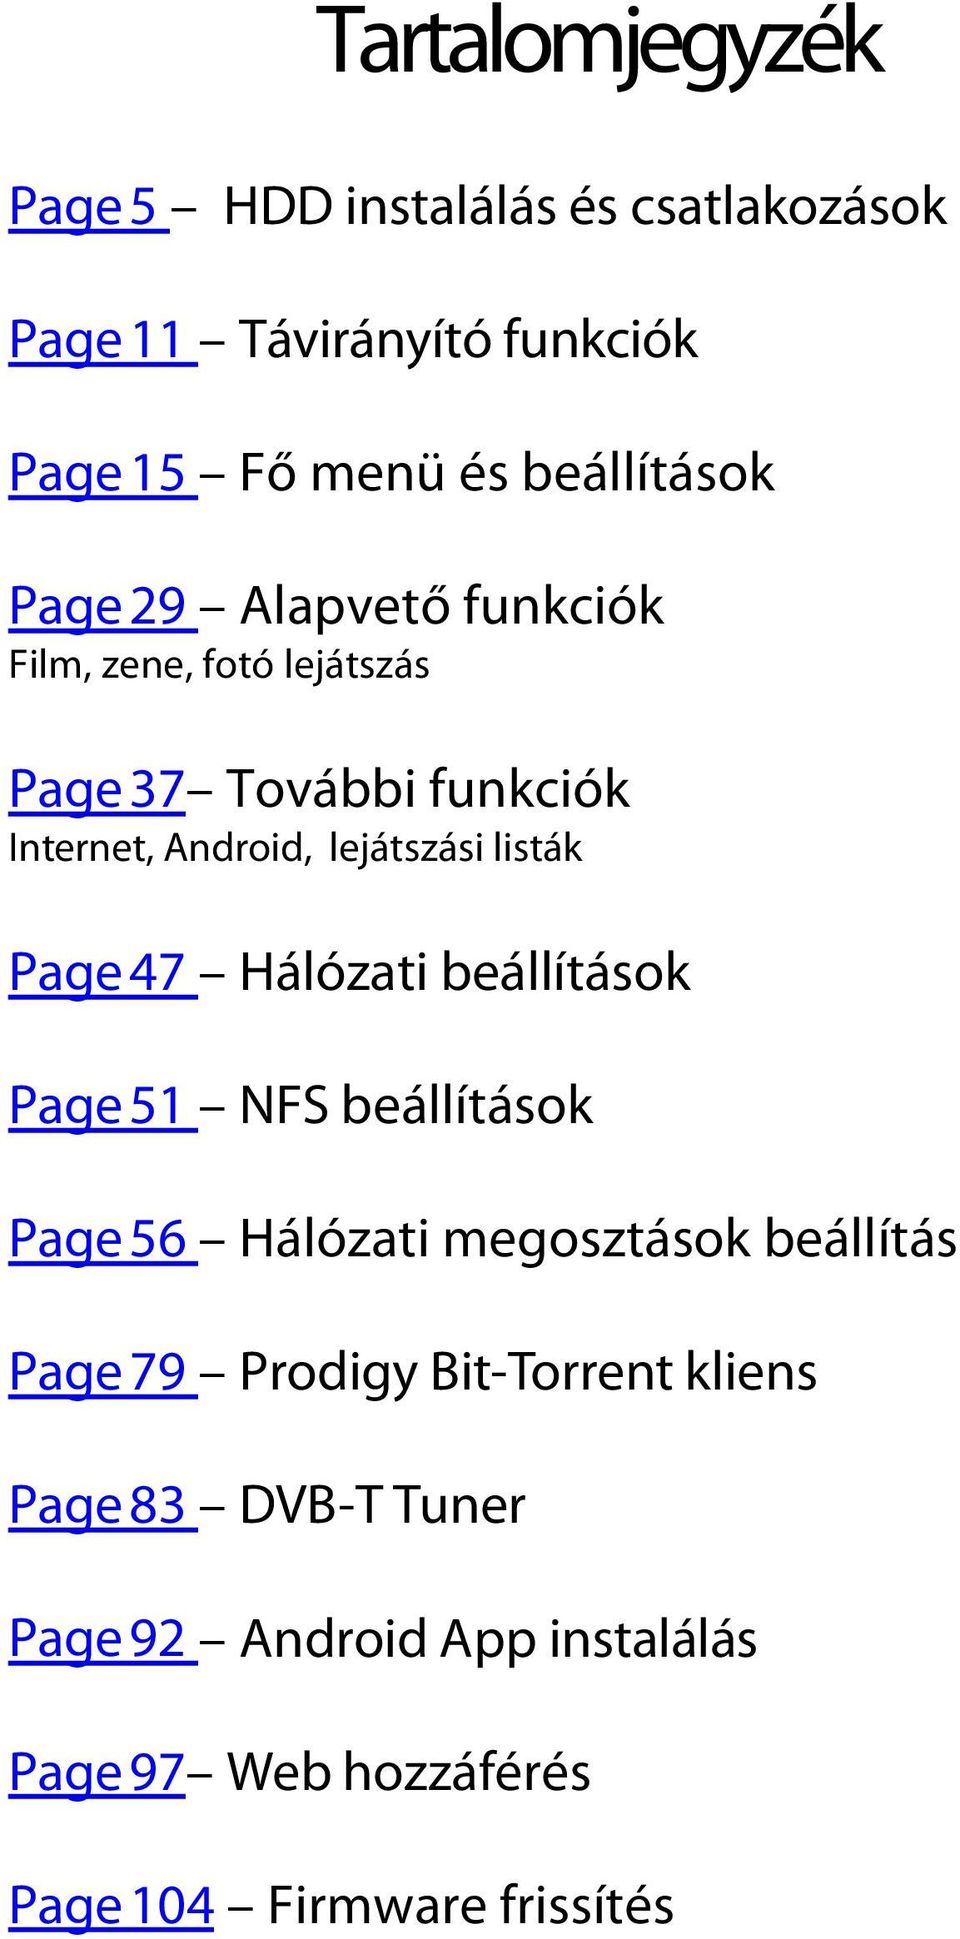 Page 47 Hálózati beállítások Page 51 NFS beállítások Page 56 Hálózati megosztások beállítás Page 79 Prodigy